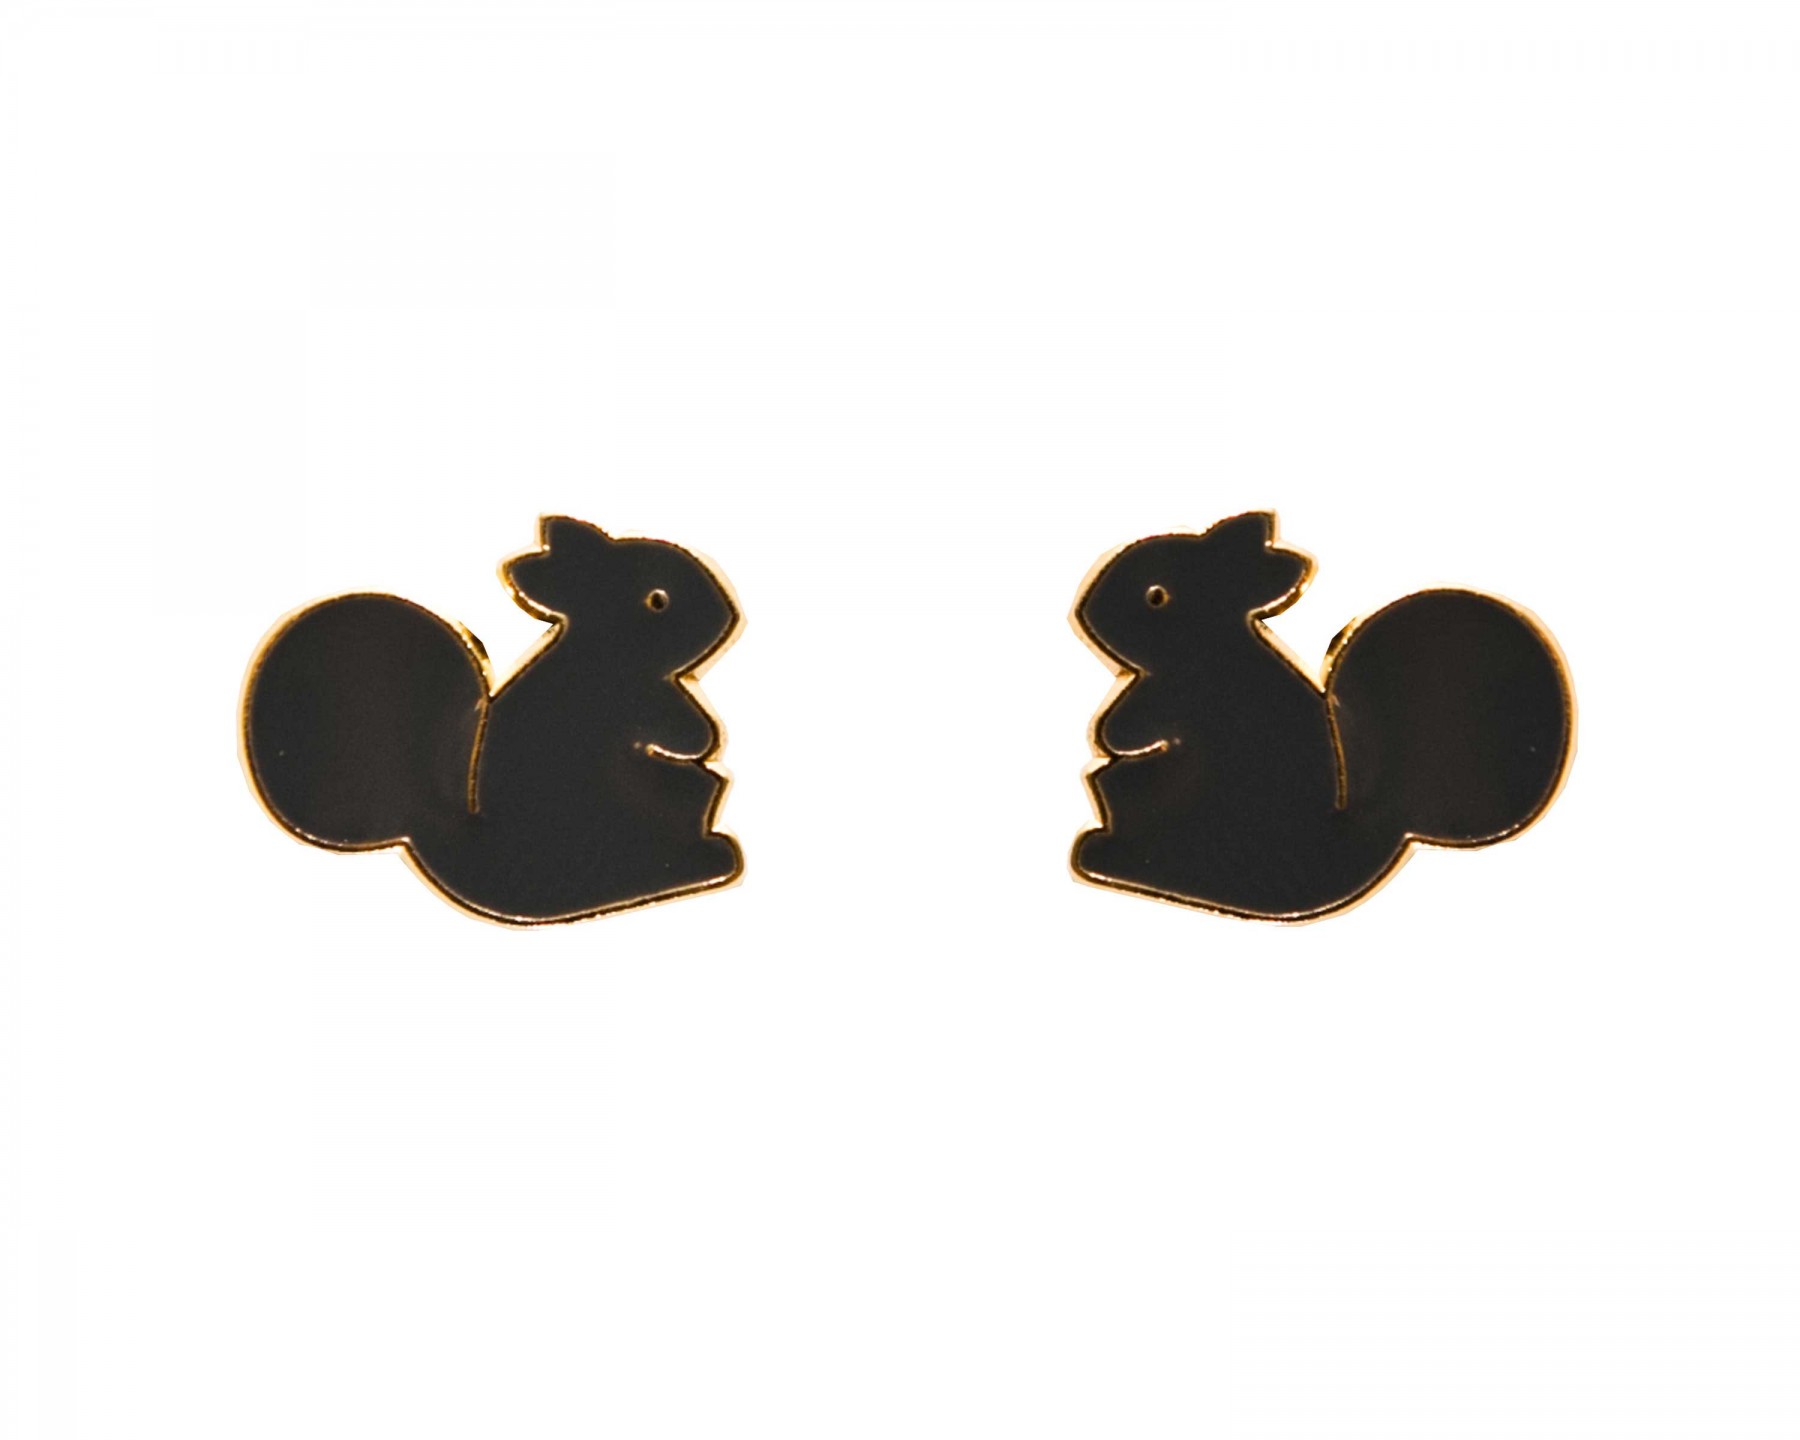 Wardy squirrel earrings